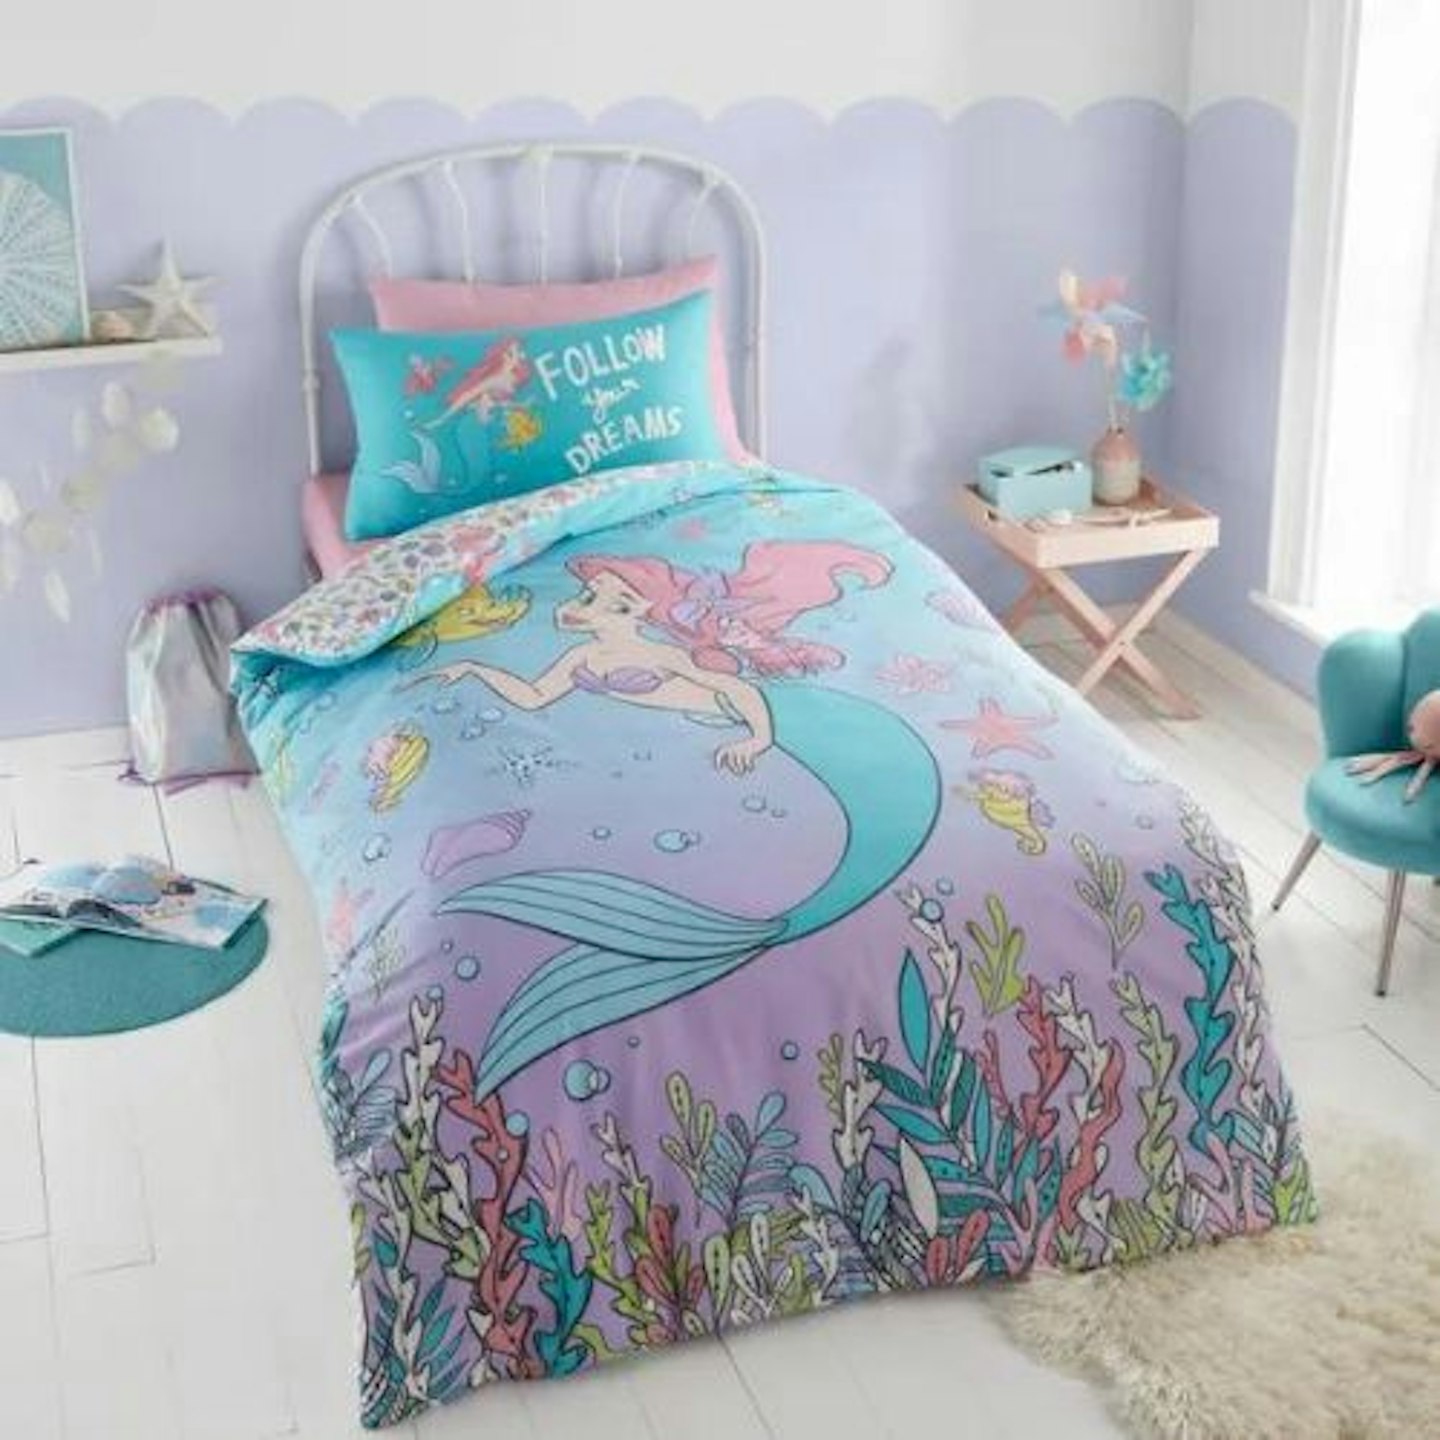 Best mermaid duvet cover Disney The Little Mermaid Duvet Cover and Pillowcase Set